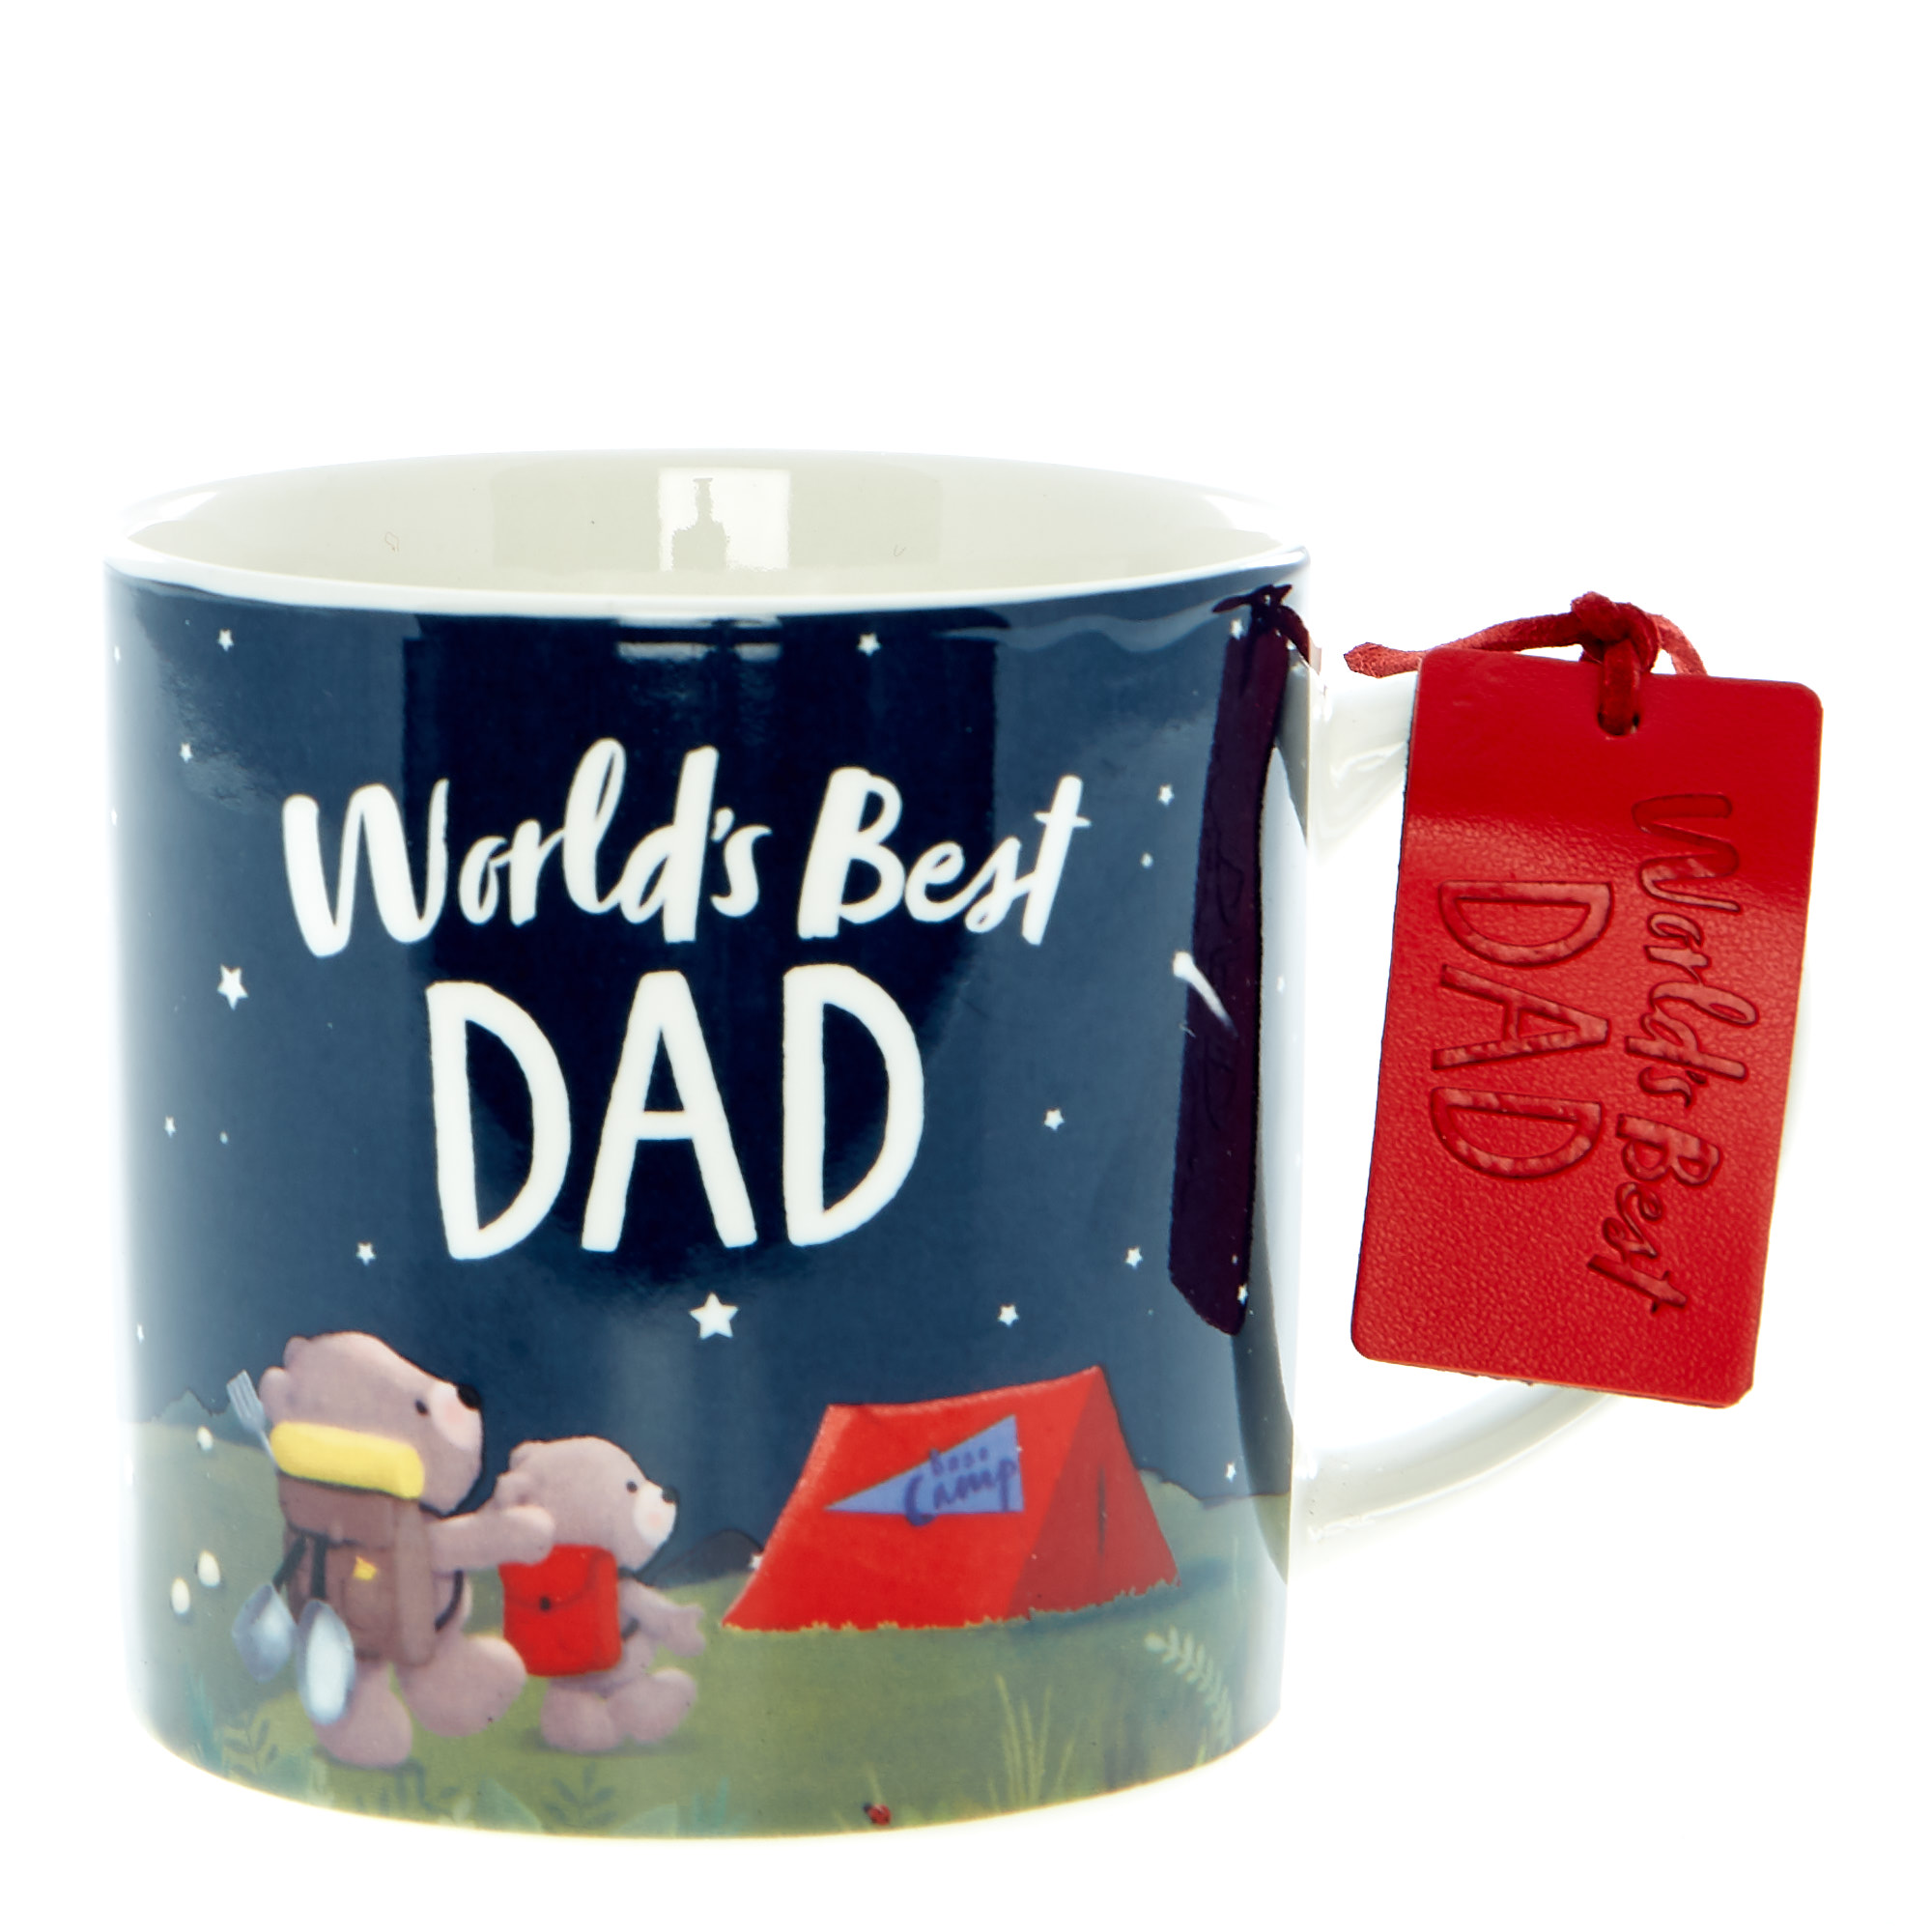 World's Best Dad Hugs Mug & Socks Set